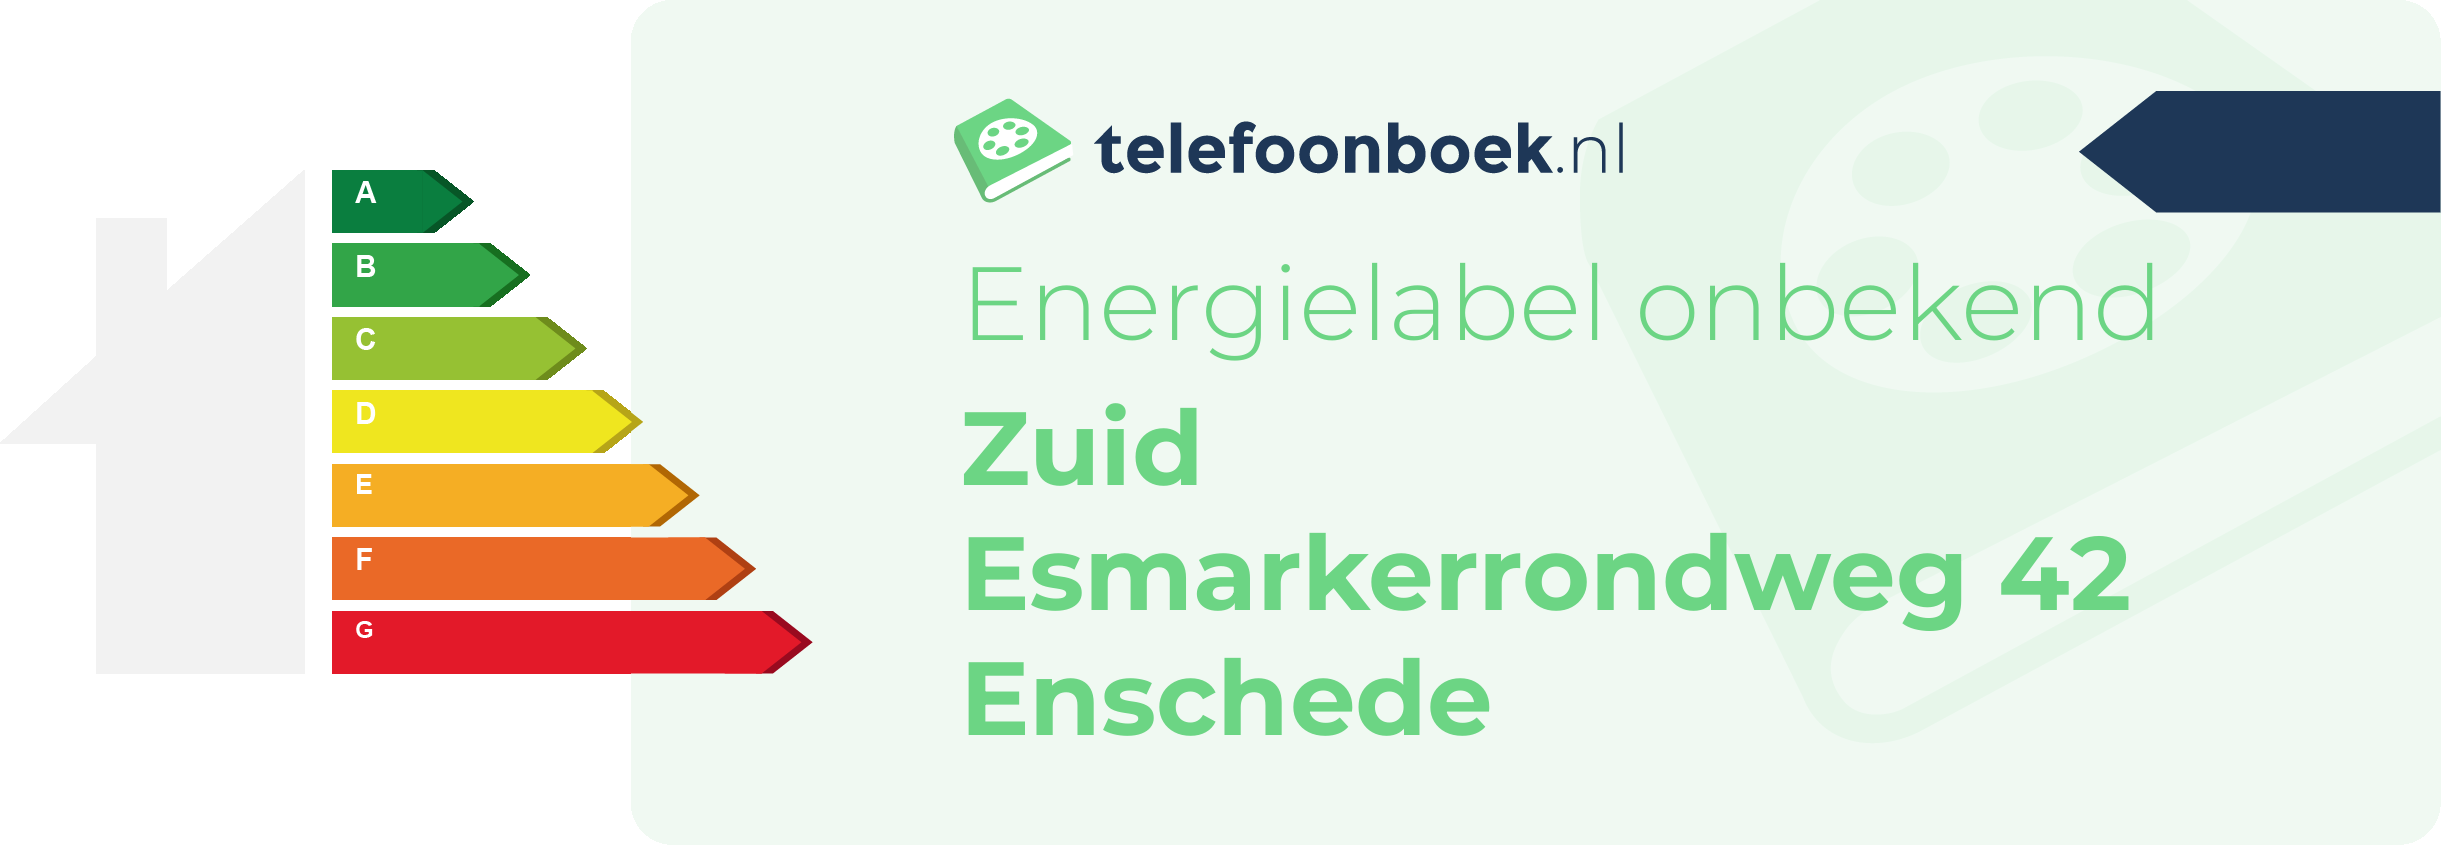 Energielabel Zuid Esmarkerrondweg 42 Enschede